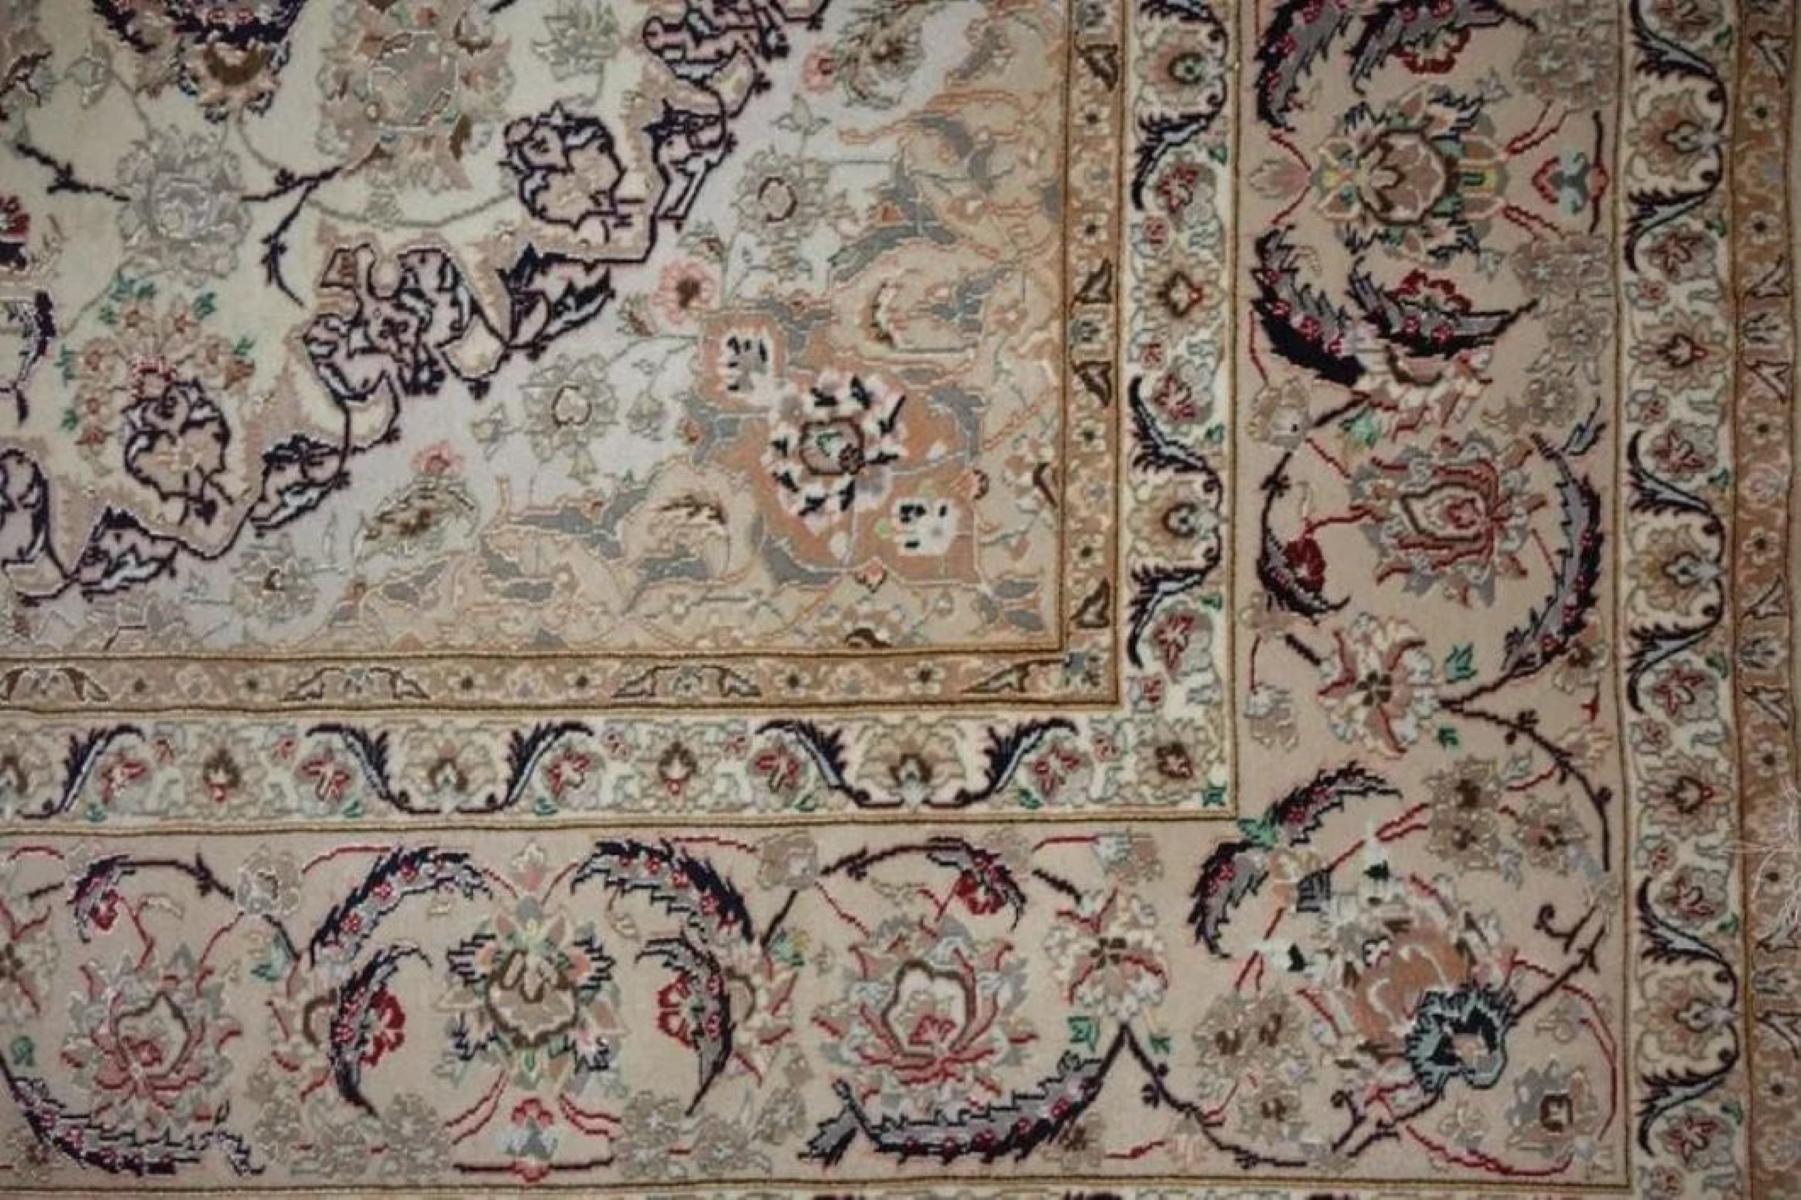 Sehr feiner Perserteppich Isfahan 600 Knoten pro Zoll, Größe 11,6 x 8,4 Iran Isfahan Enishri Wolle und Seide mit einer Seidengrundlage. Rund 8,000,000 Knoten, einer nach dem anderen von Hand geknüpft. Es dauert 5 Jahre, um dieses Kunstwerk zu